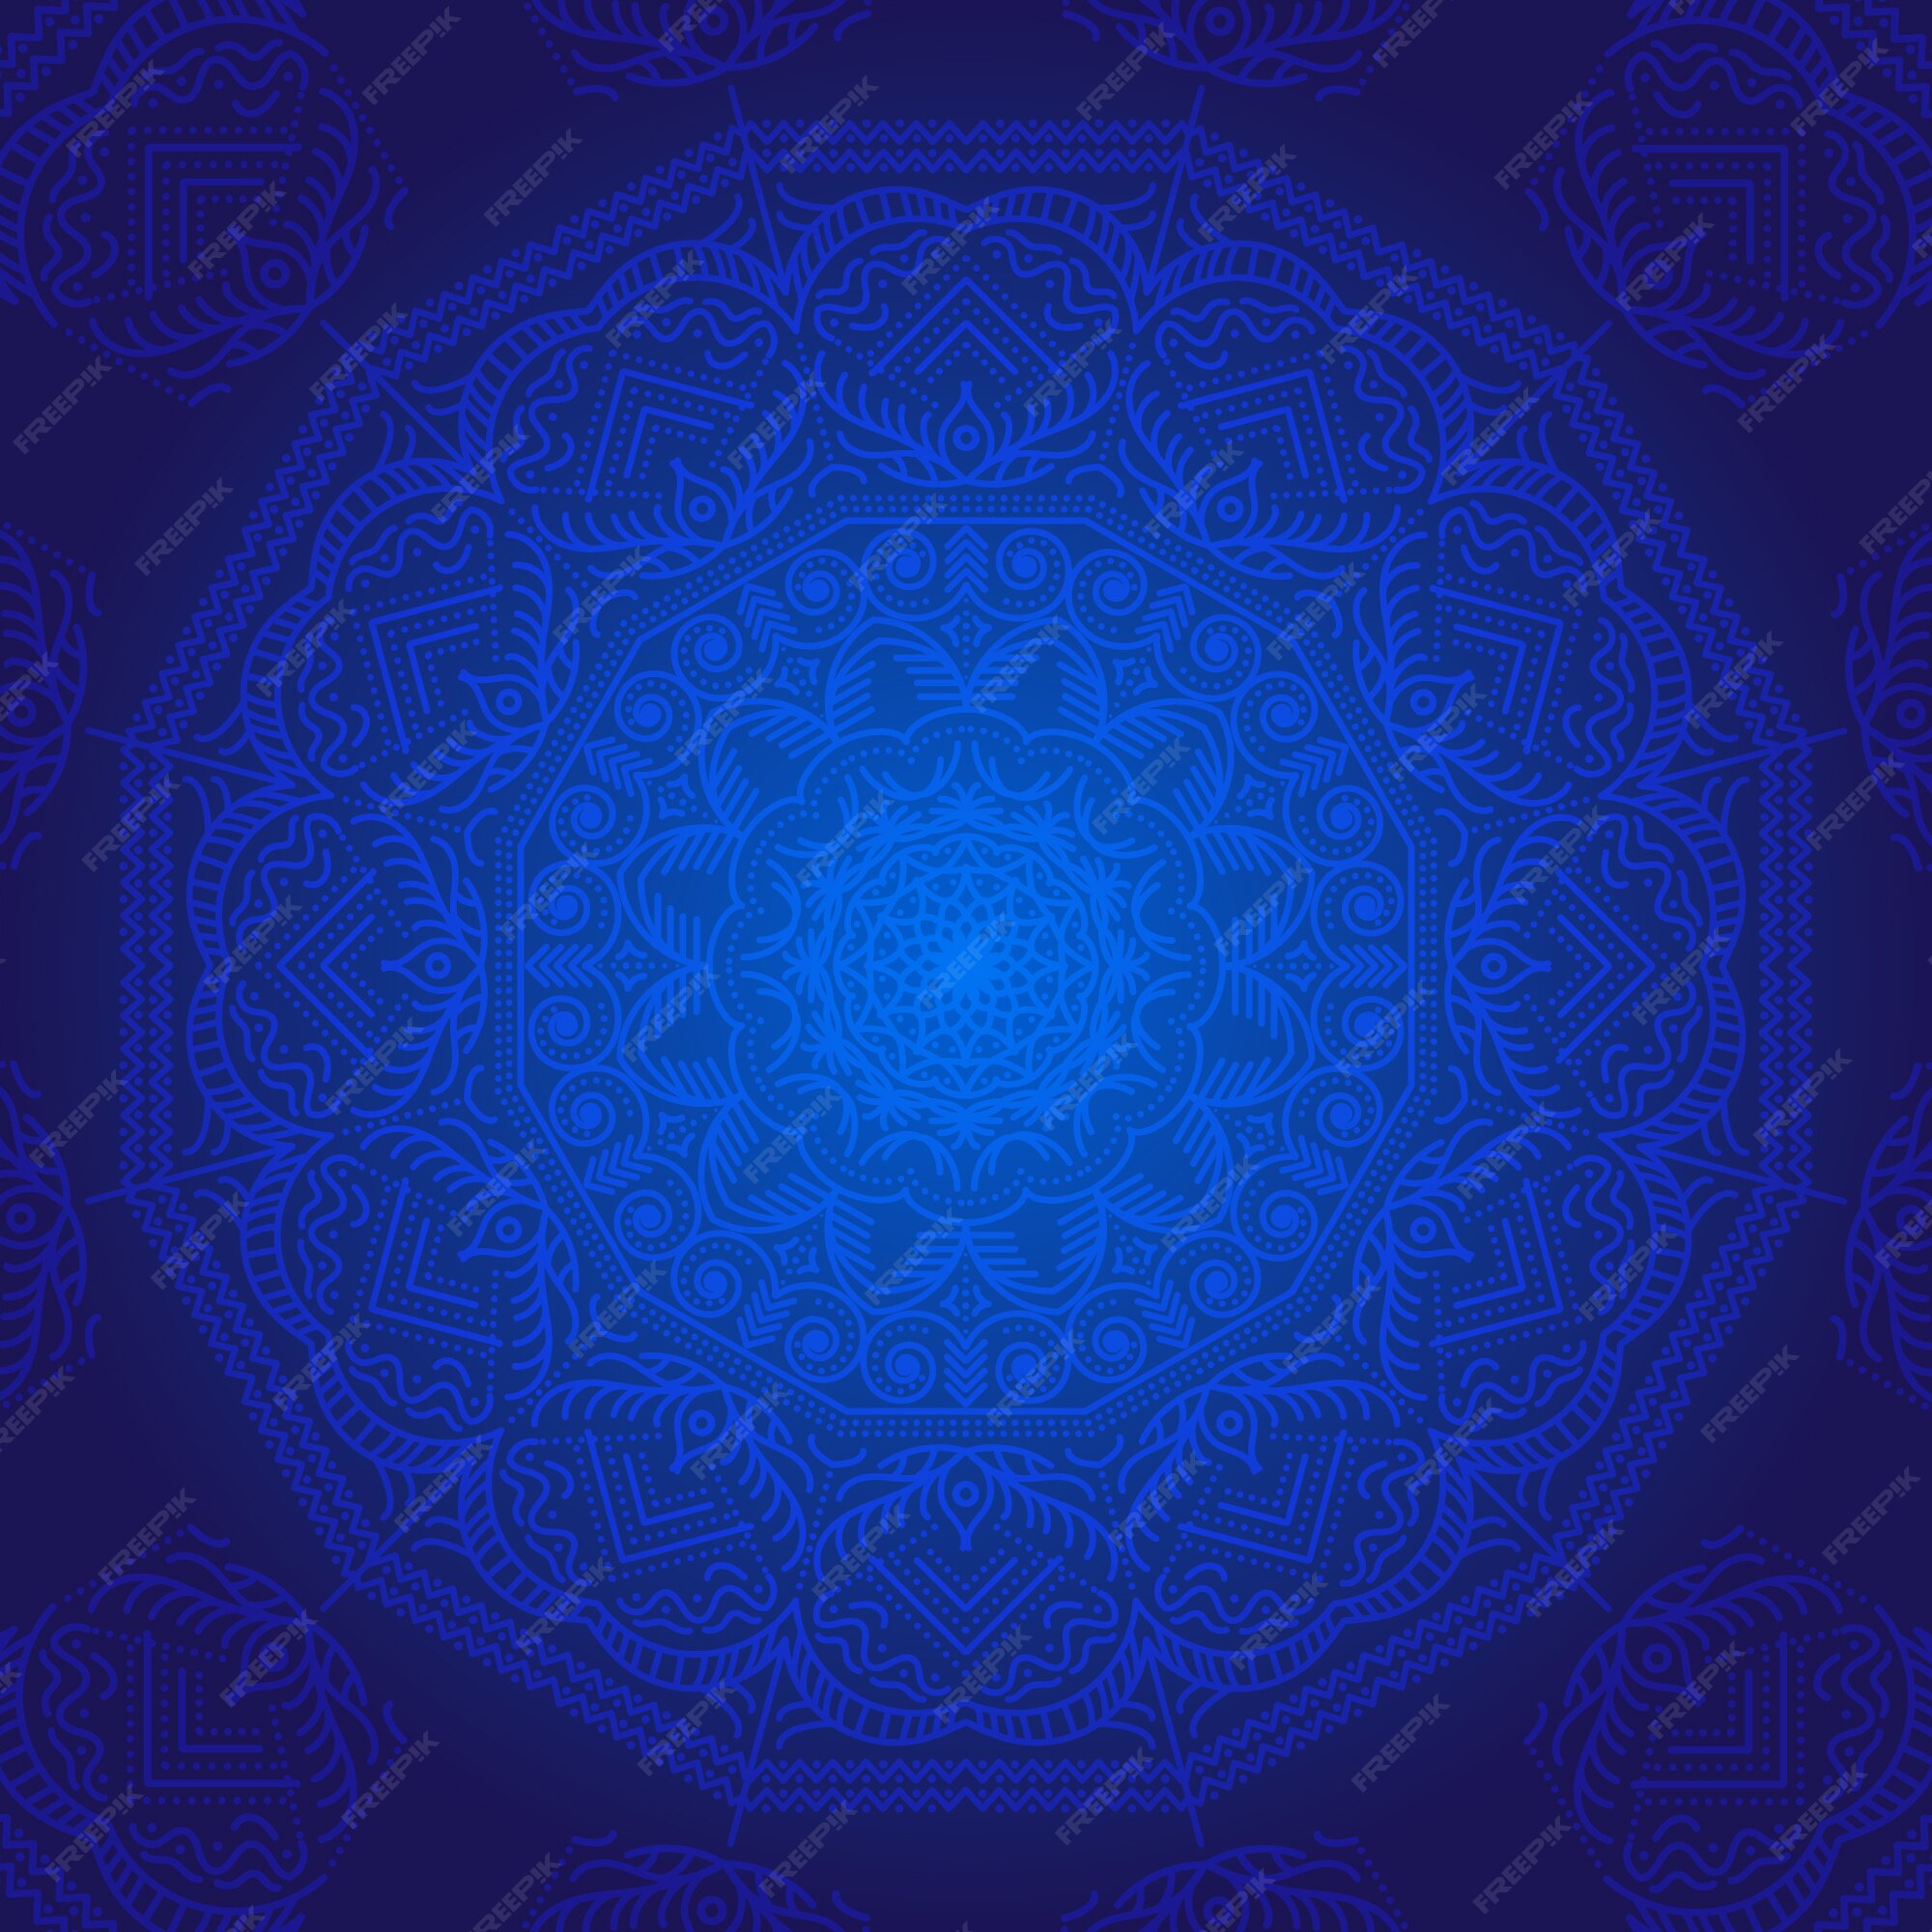 Mandala màu xanh là một tác phẩm nghệ thuật đường nét tuyệt đẹp. Hình ảnh này sẽ đưa bạn đến với một thế giới huyền bí, tĩnh lặng và đầy cảm hứng.